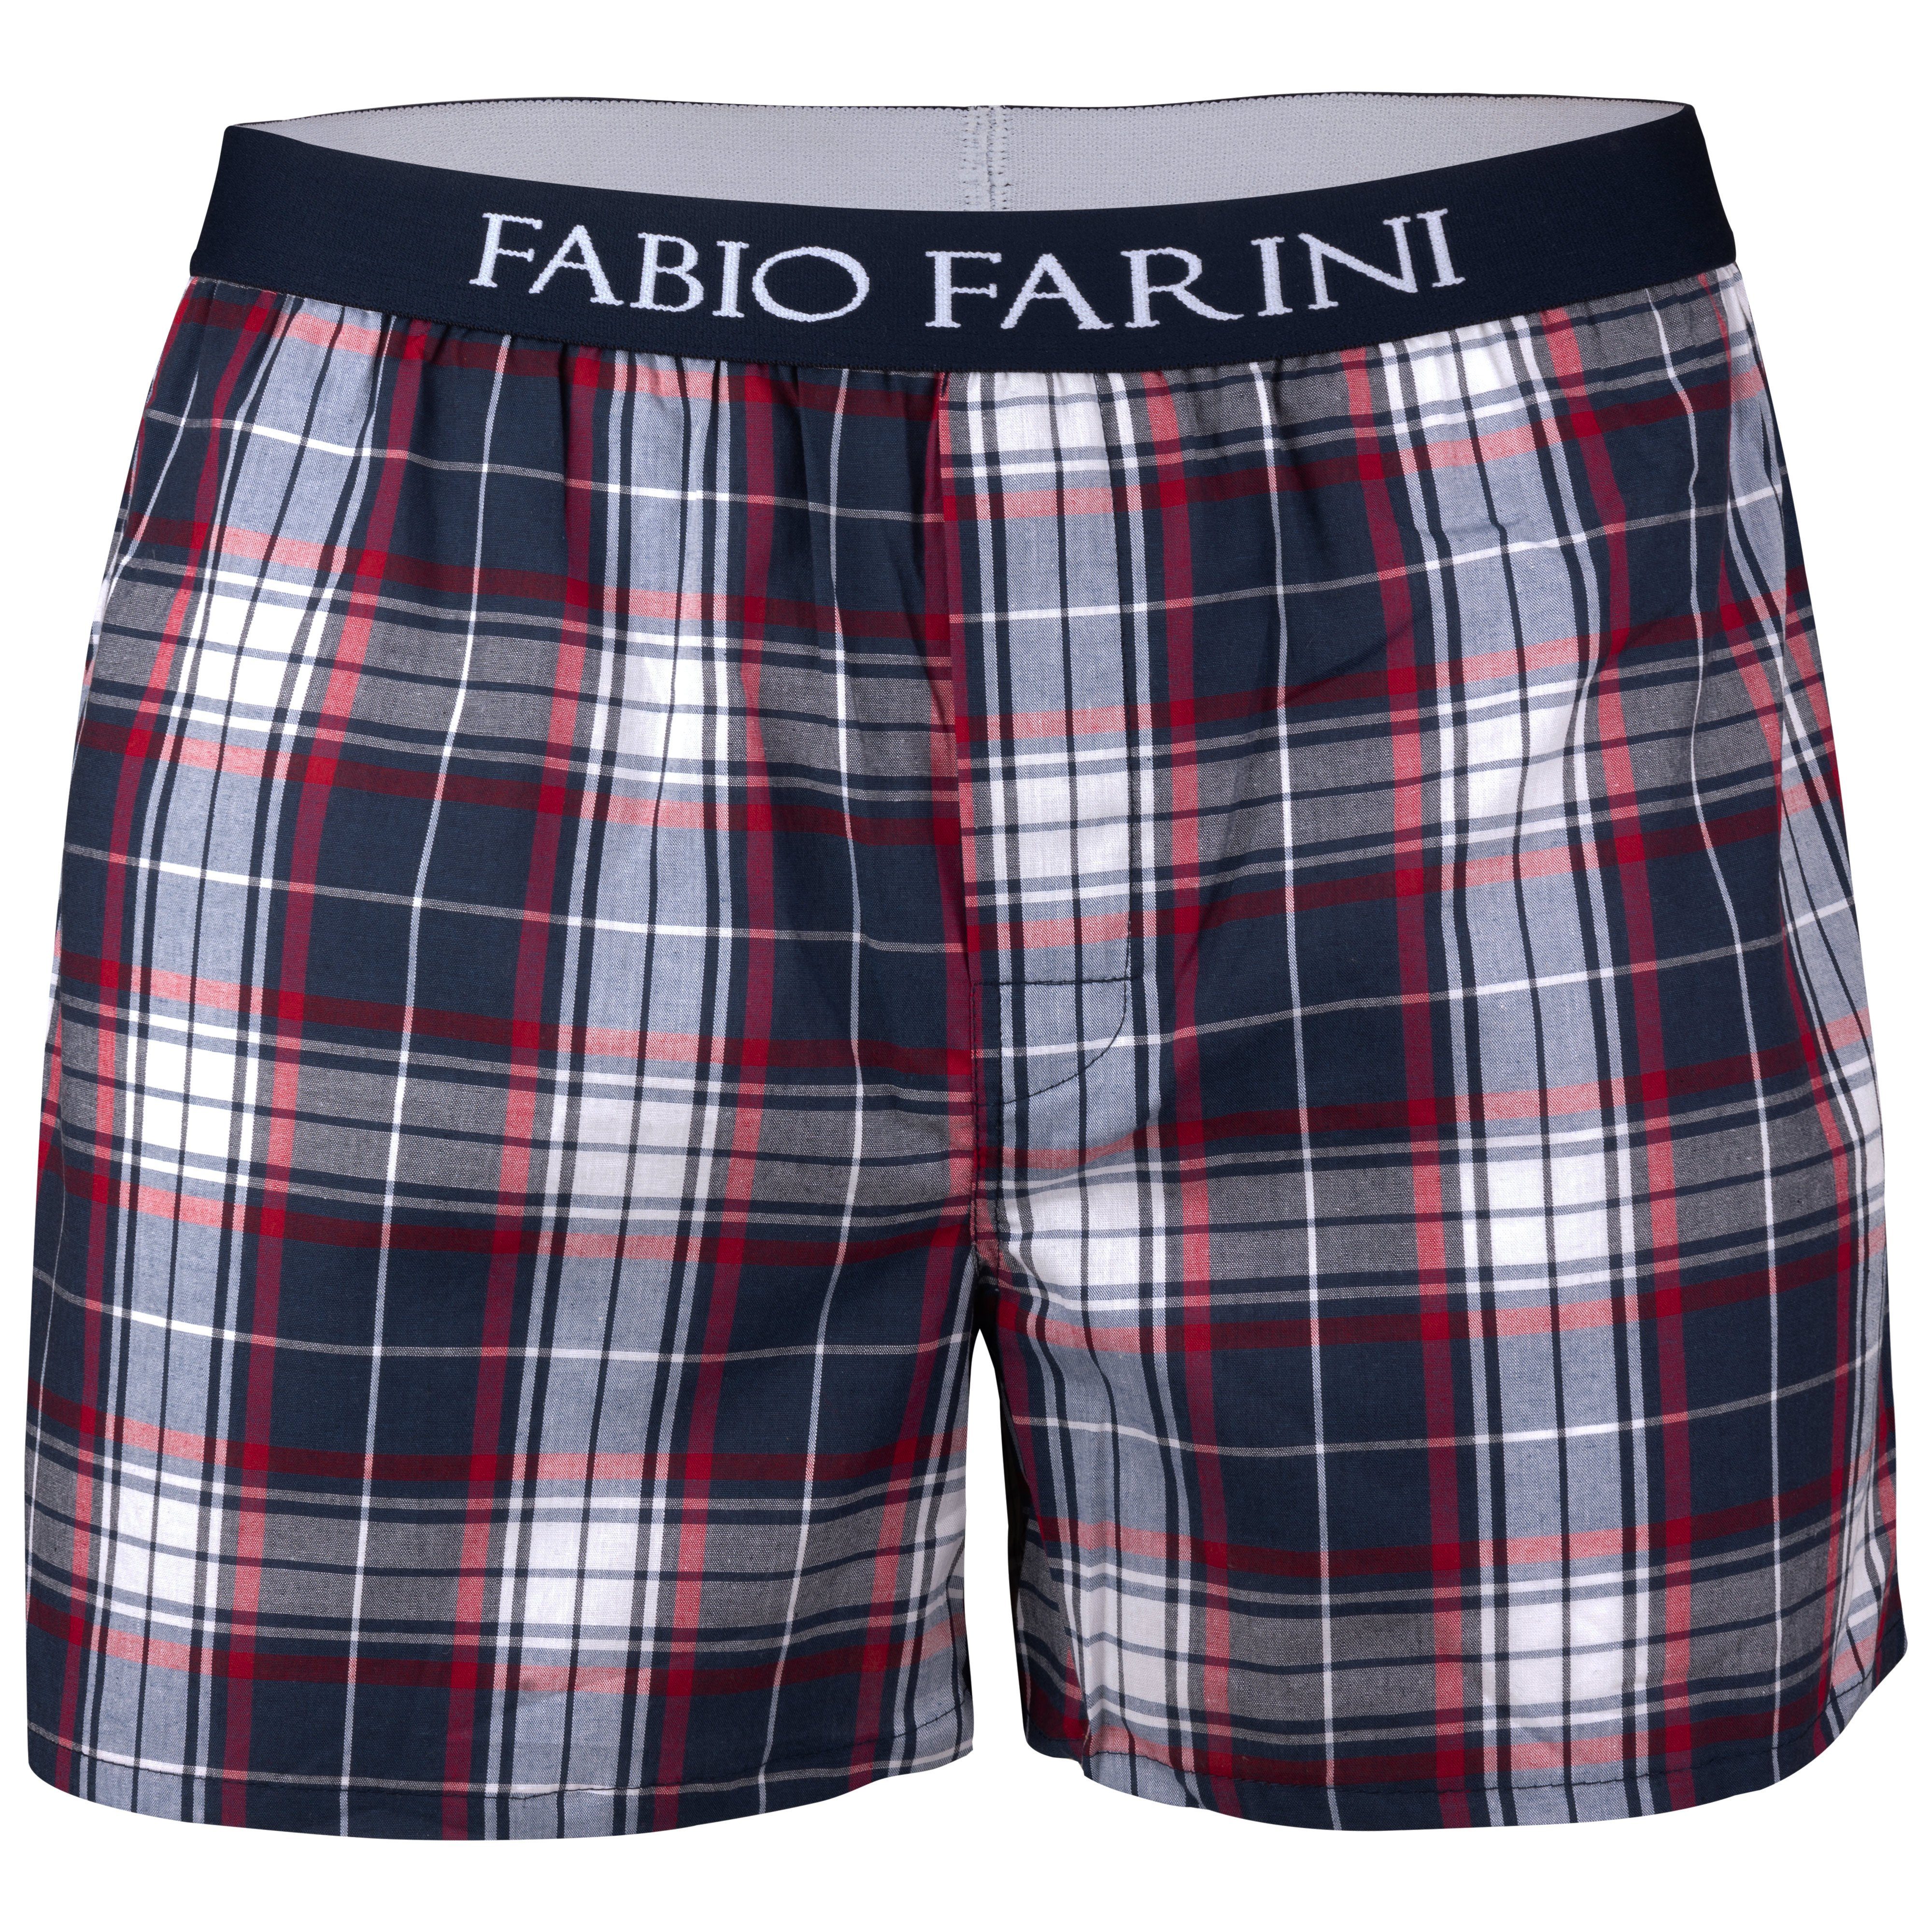 Männer Passform Unterhosen Farini (4-St) 5 Webboxer - bequeme, Boxershorts verdeckter Set mit weite Knopfleiste Fabio Herren